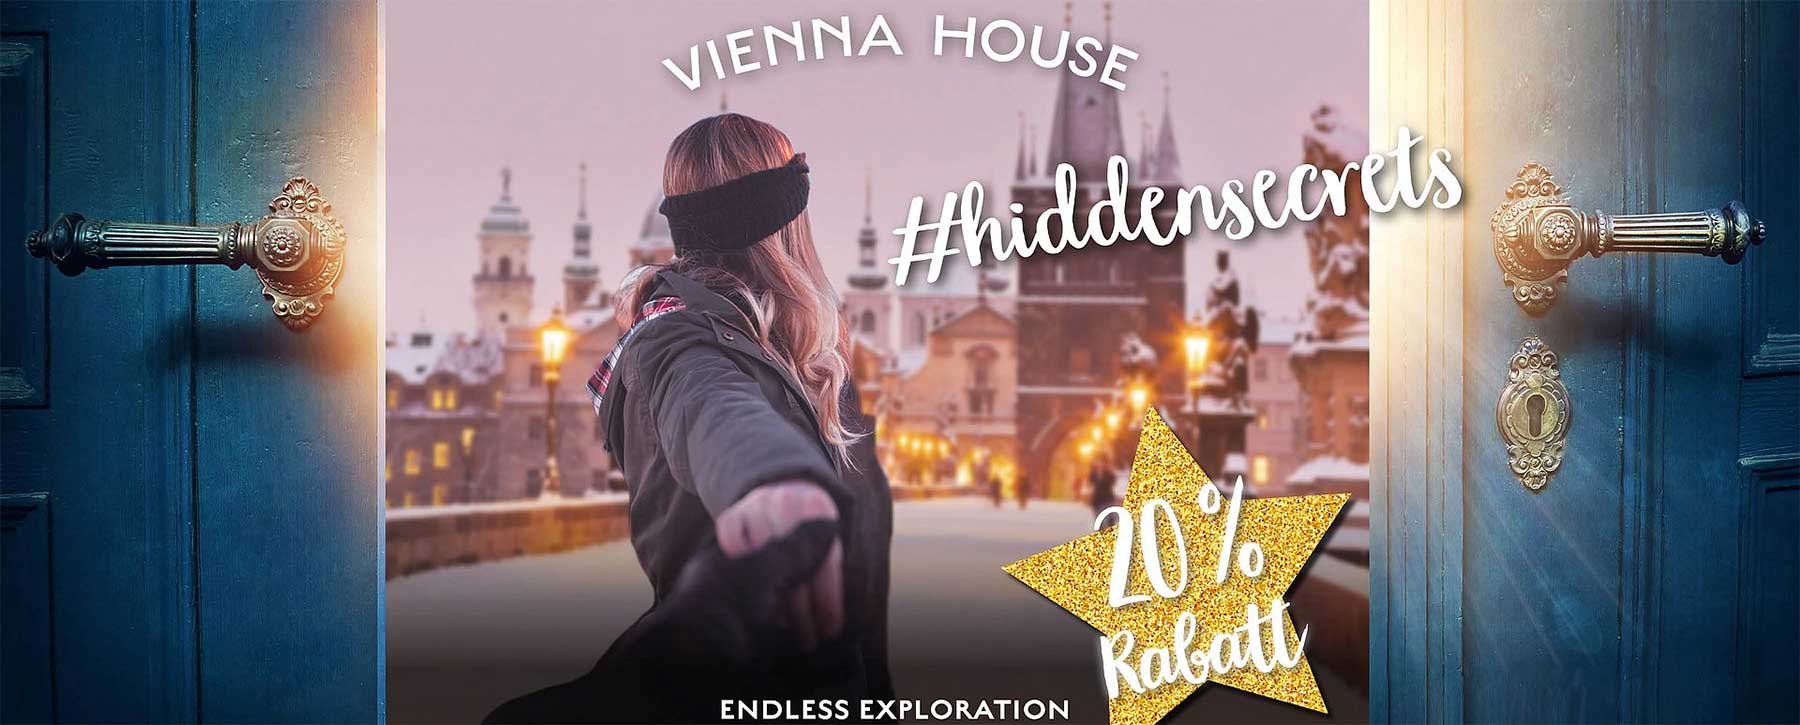 20% Rabatt und Gratisübernachtungen bei den Vienna House #hiddensecrets vienna-house-hidden-secrets-gewinnspiel_01-1 